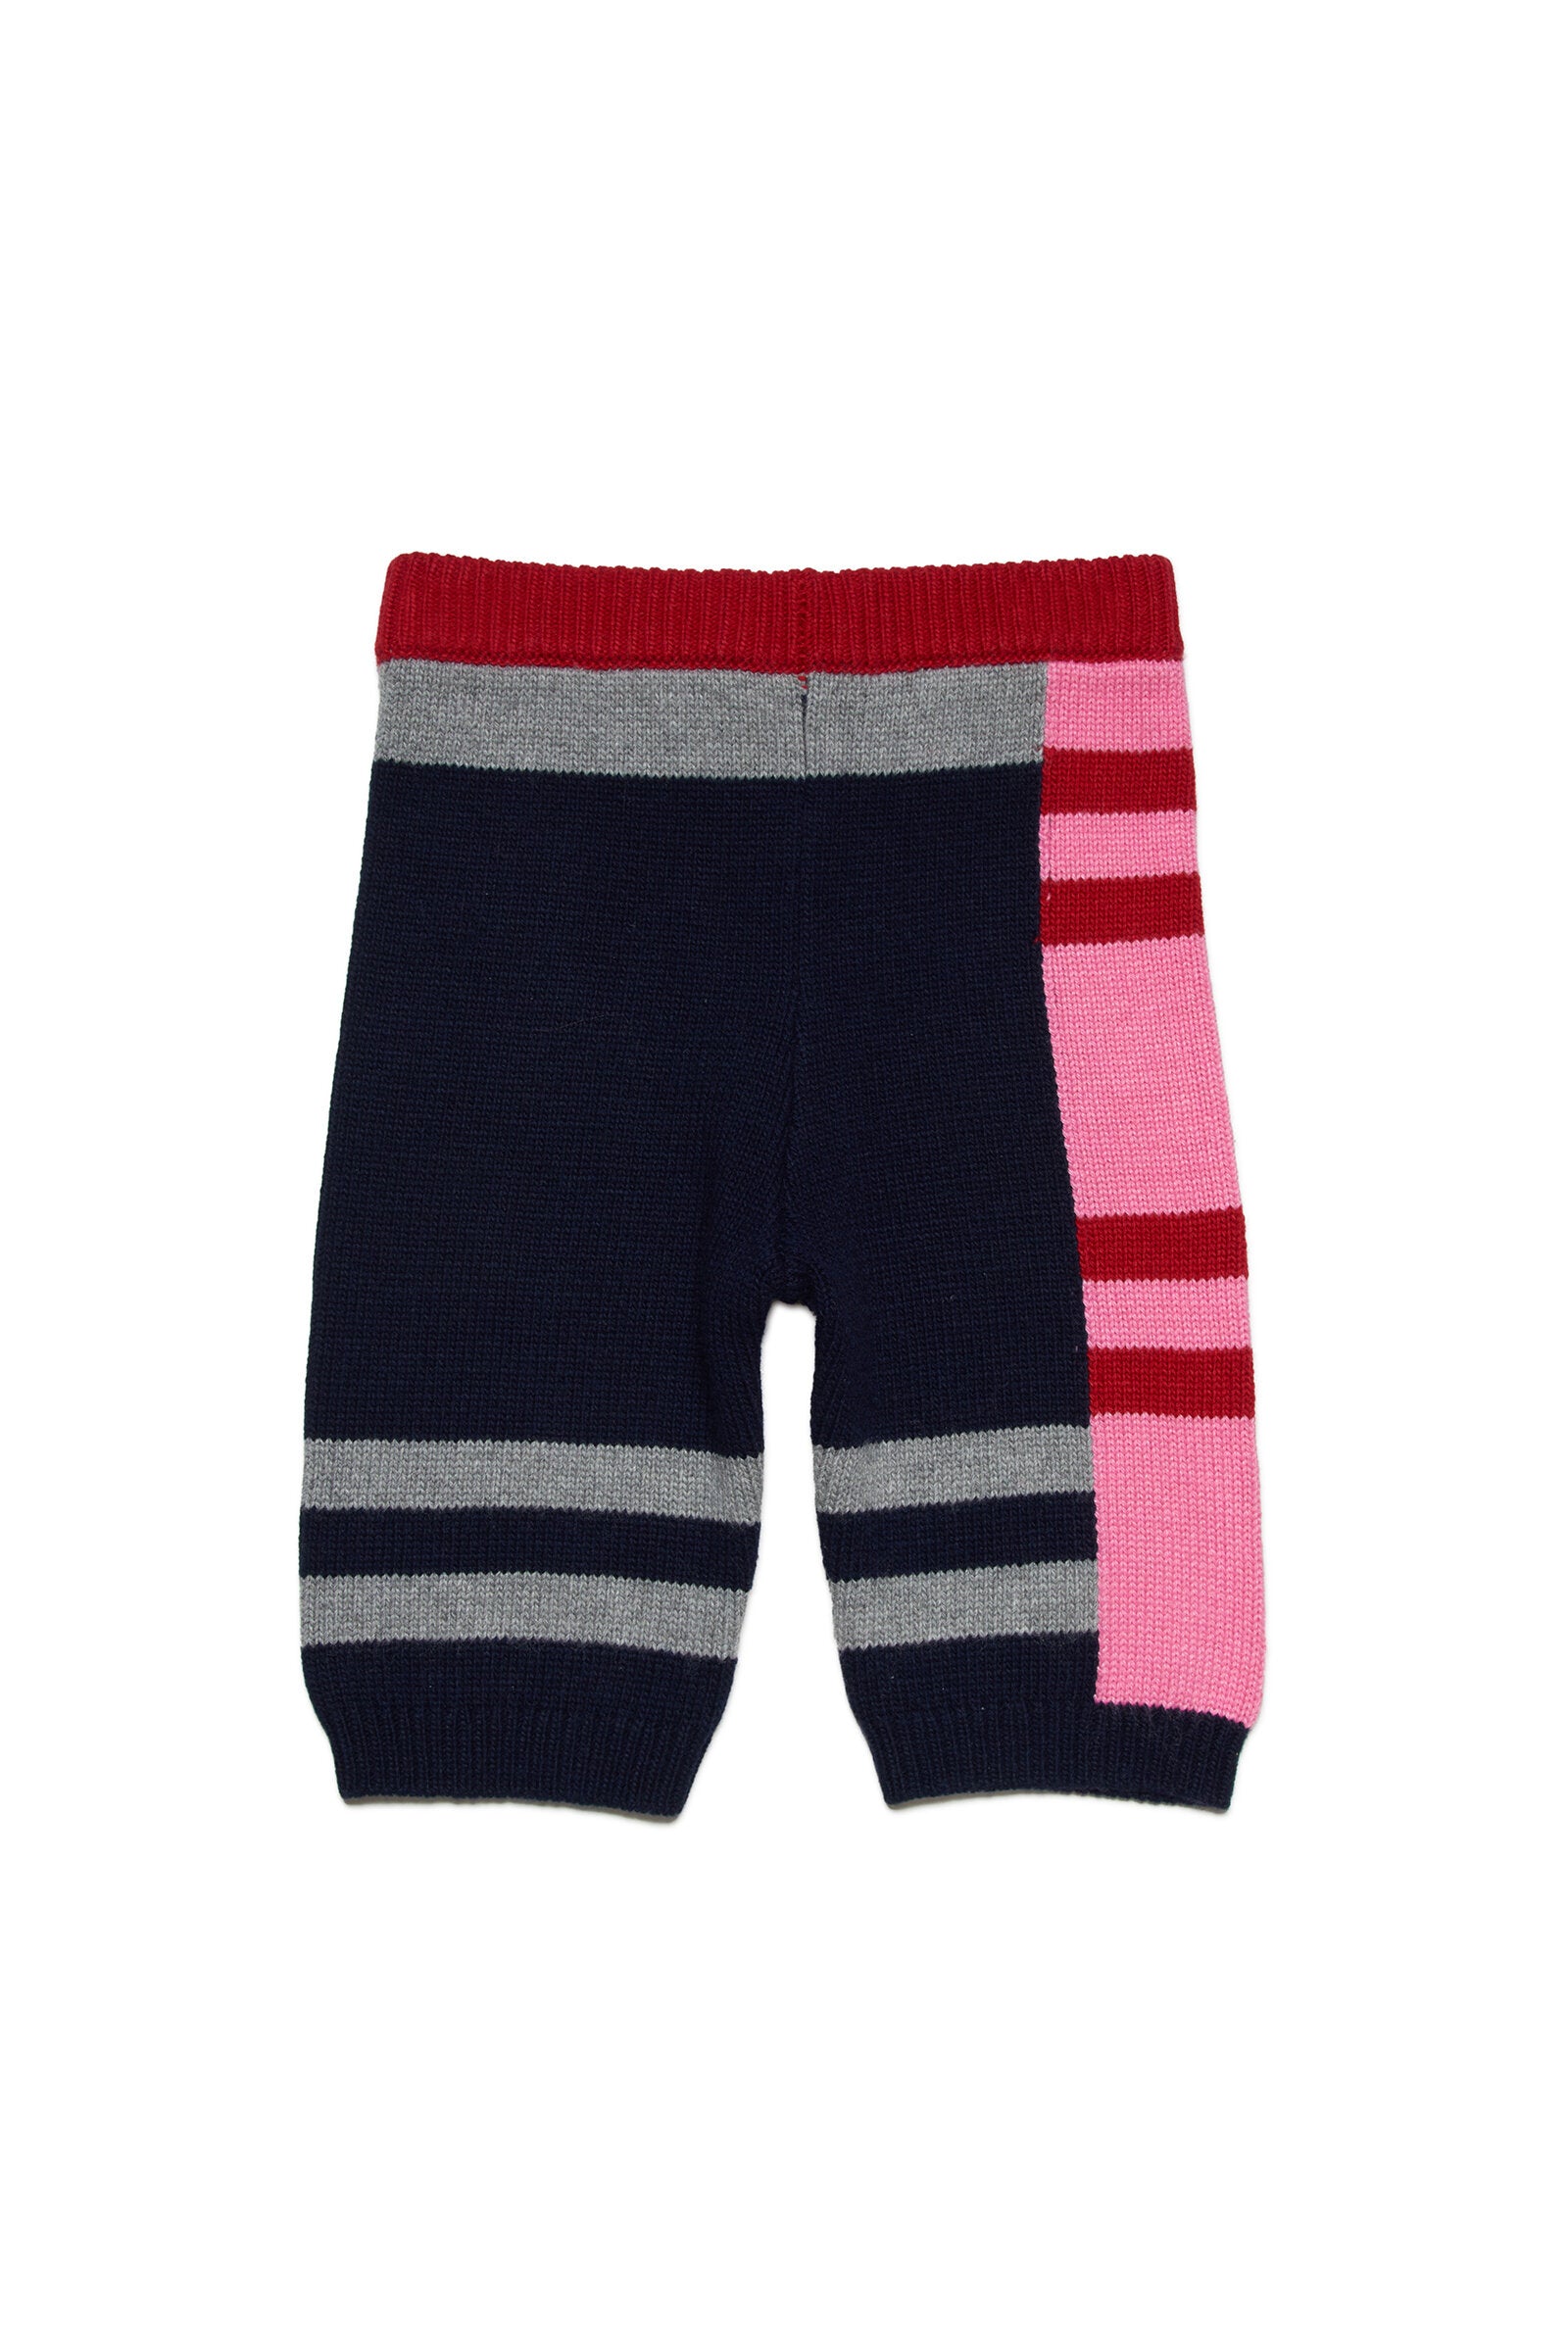 Pantalones cortos de mezcla de lana multicolor